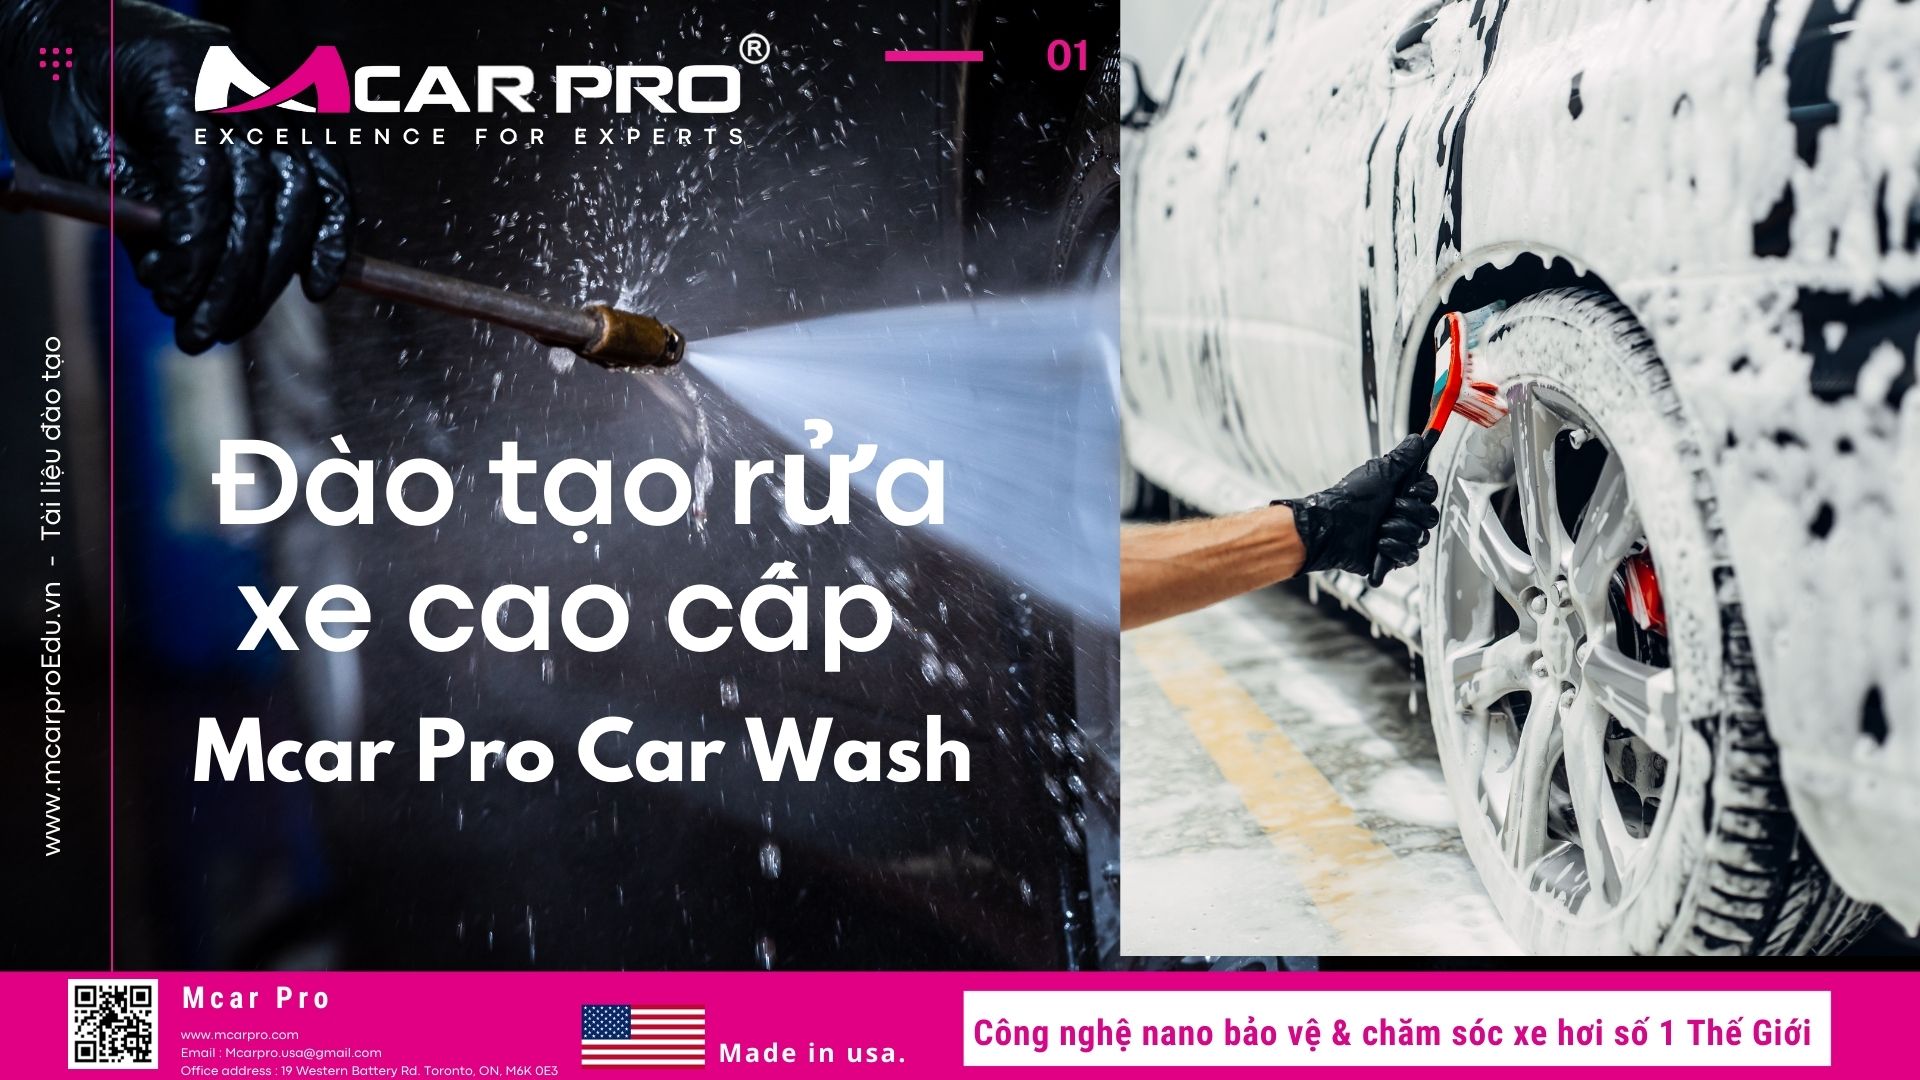 Đào Tạo Quy trình rửa xe 13 Bước Euro Wash - Mcar Pro